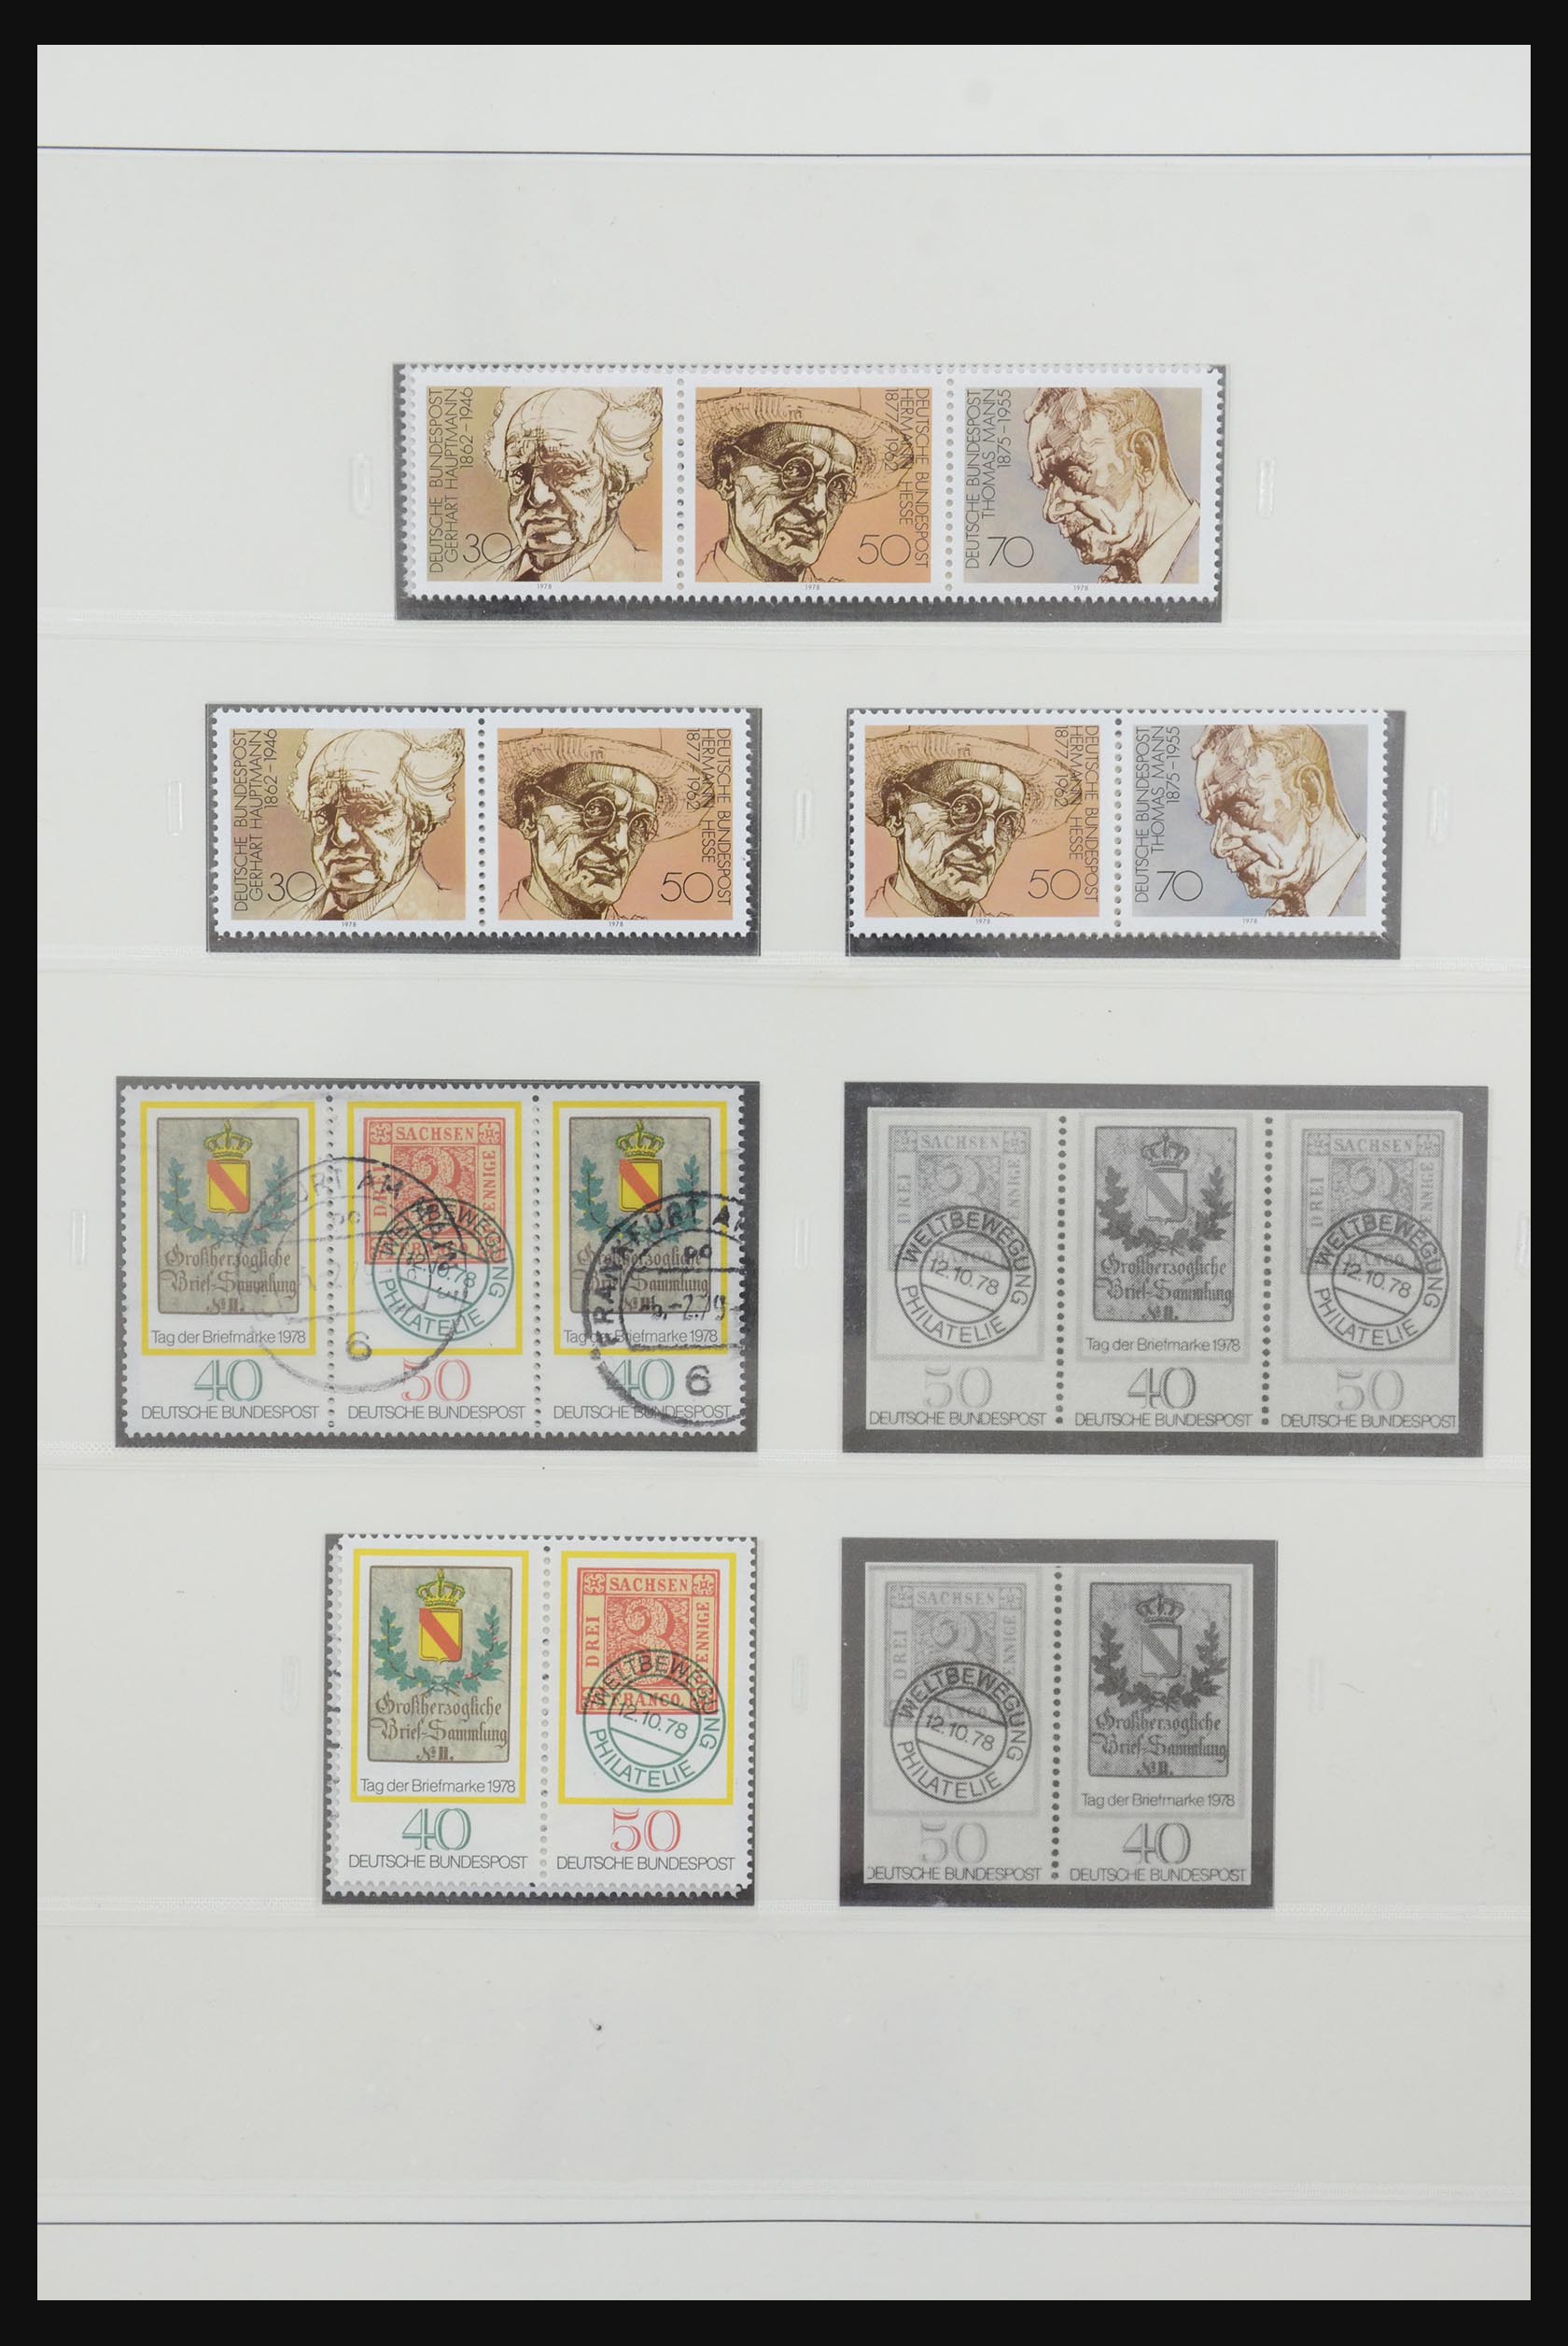 31842 058 - 31842 Bundespost combinaties 1951-2003.